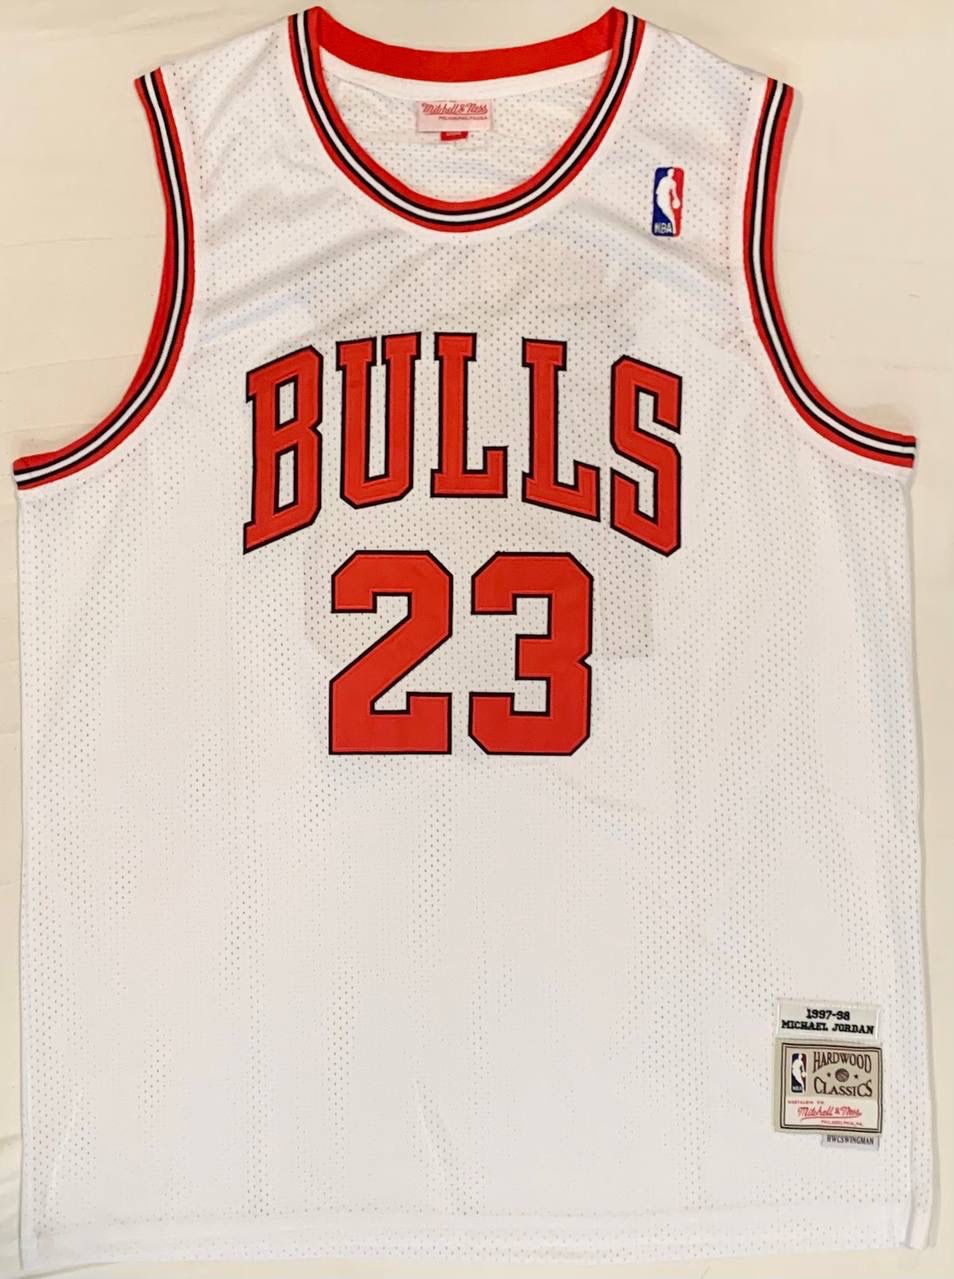 Bulls Bape 23 Michael Jordan Red 1997-98 Hardwood Classics Jersey